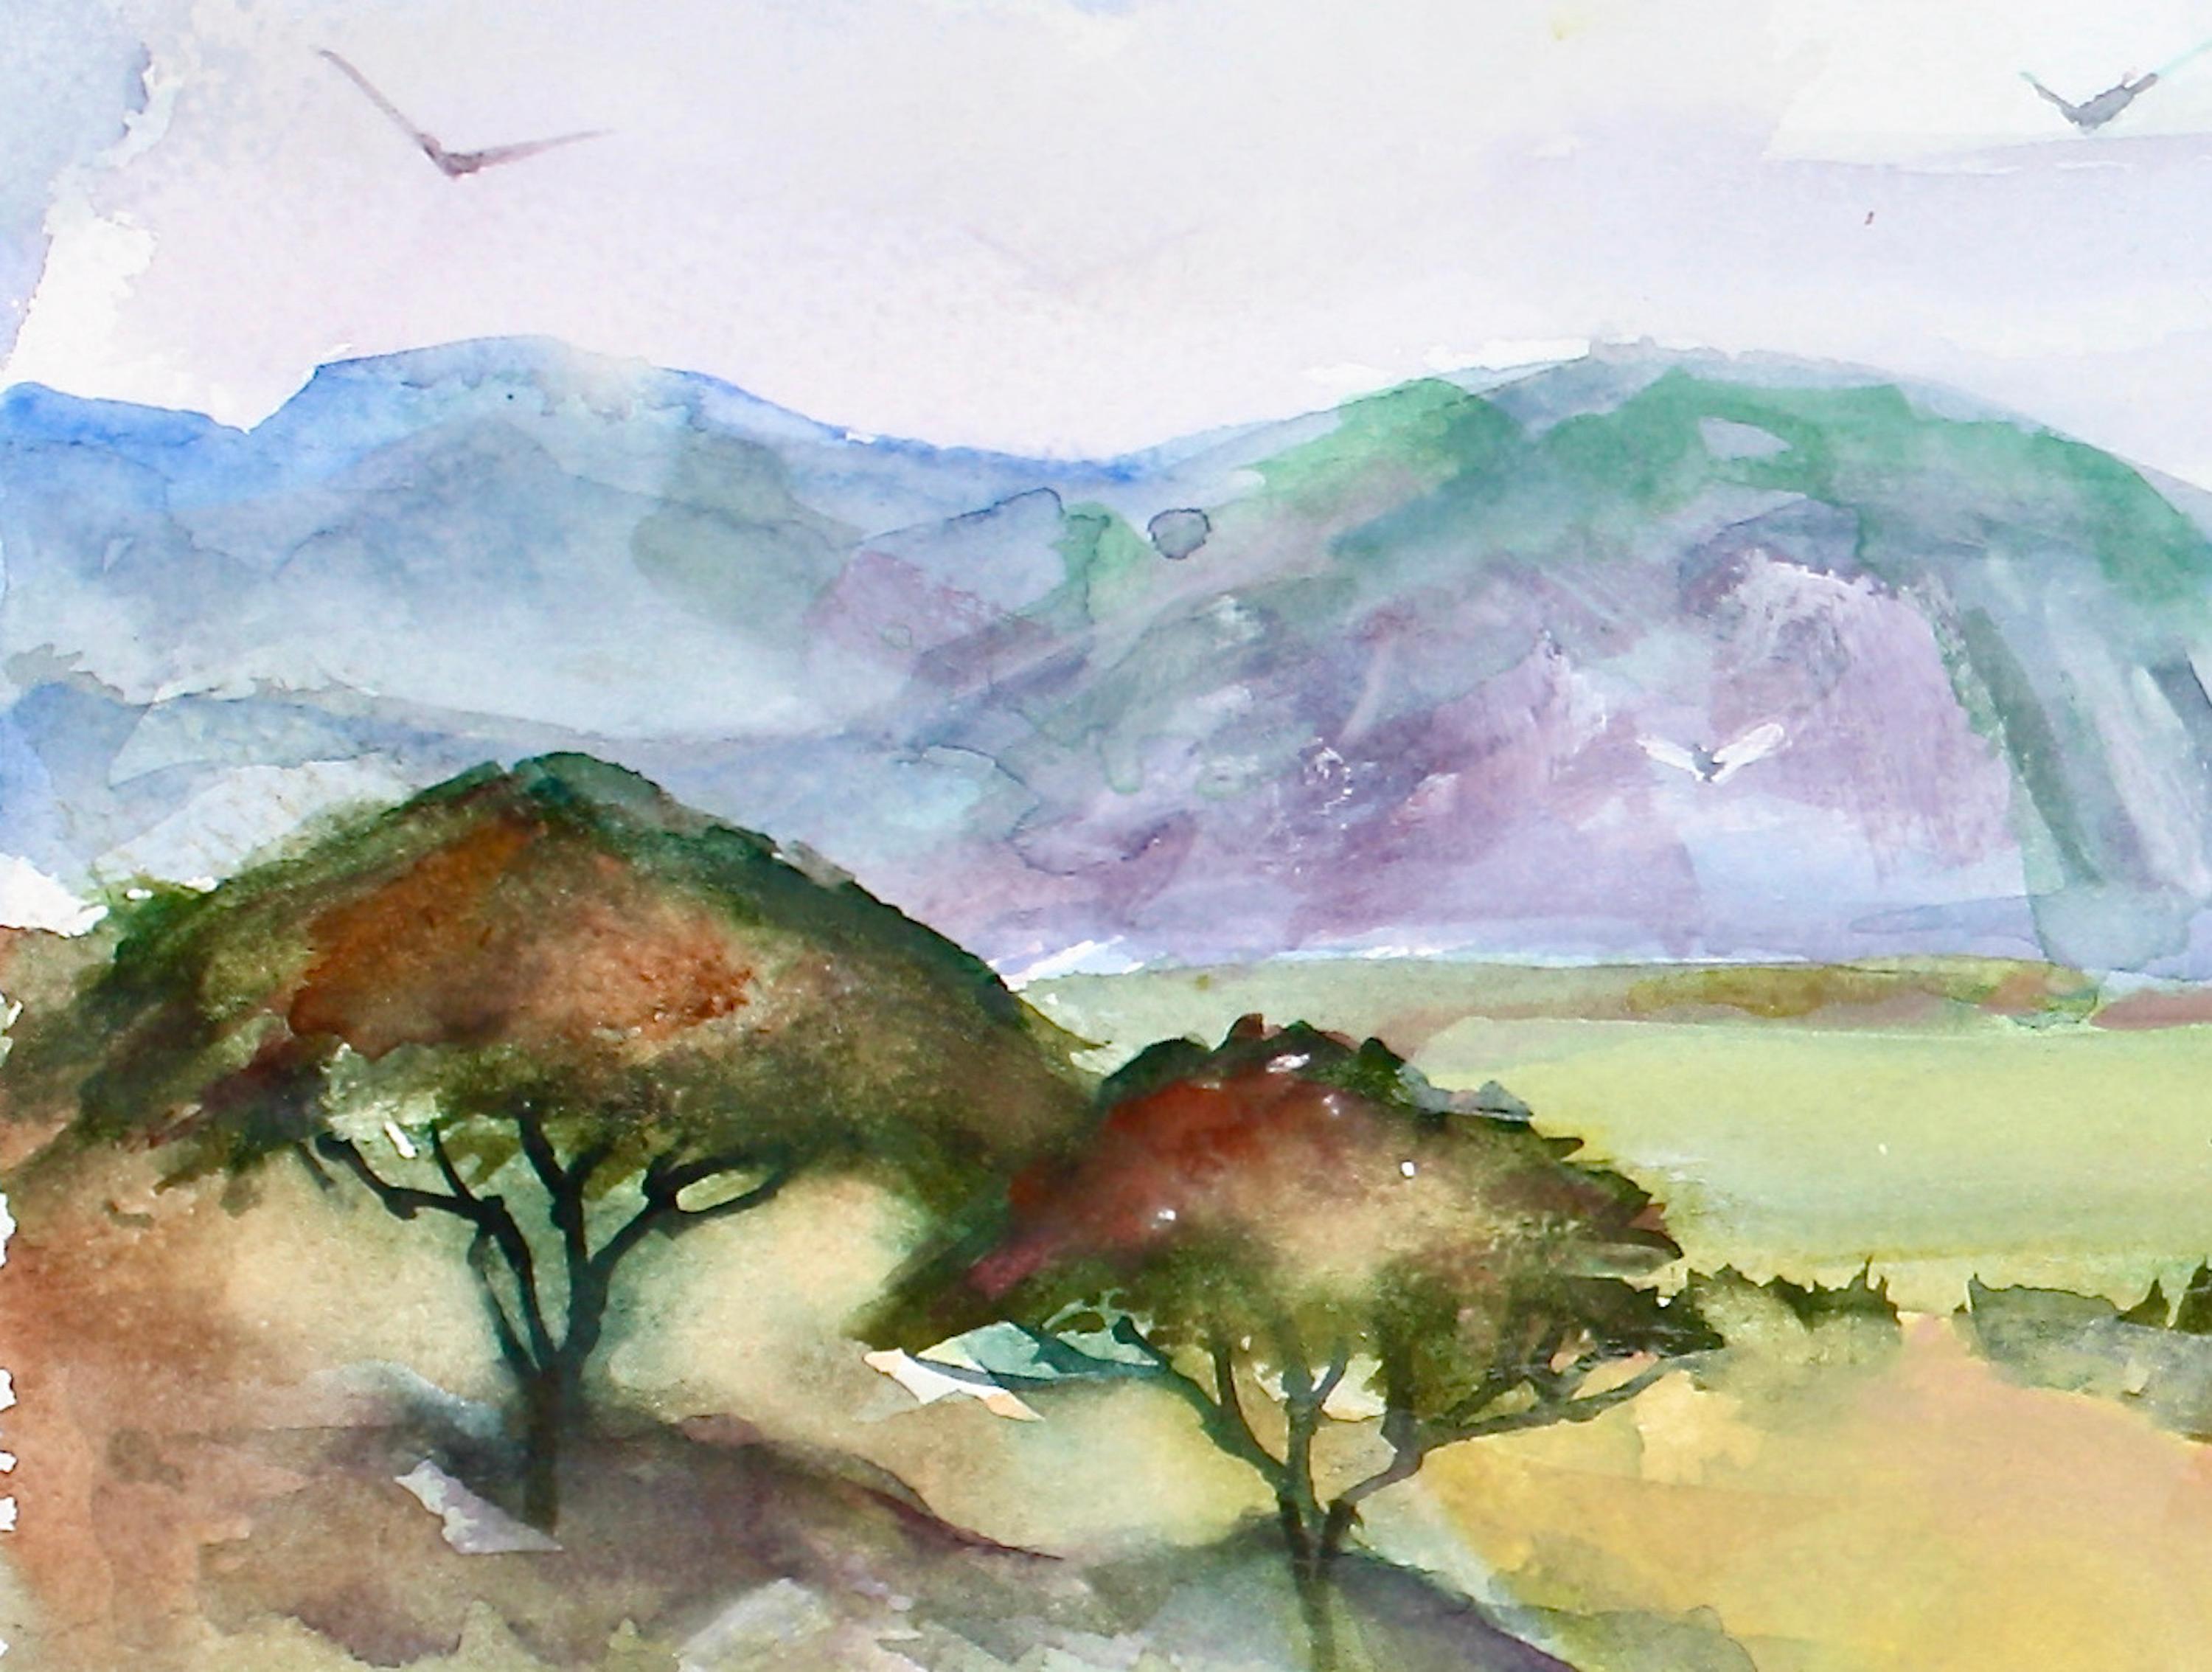 <p>Kommentare des Künstlers<br>Der Künstler Joe Giuffrida malt Akazienbäume in einer afrikanischen Landschaft. Das üppige Grün bietet ansprechende Werte, Formen und Farben. Joe malt eine Fahrbahn, um den Blick in die Tiefe auf die entfernten Ebenen